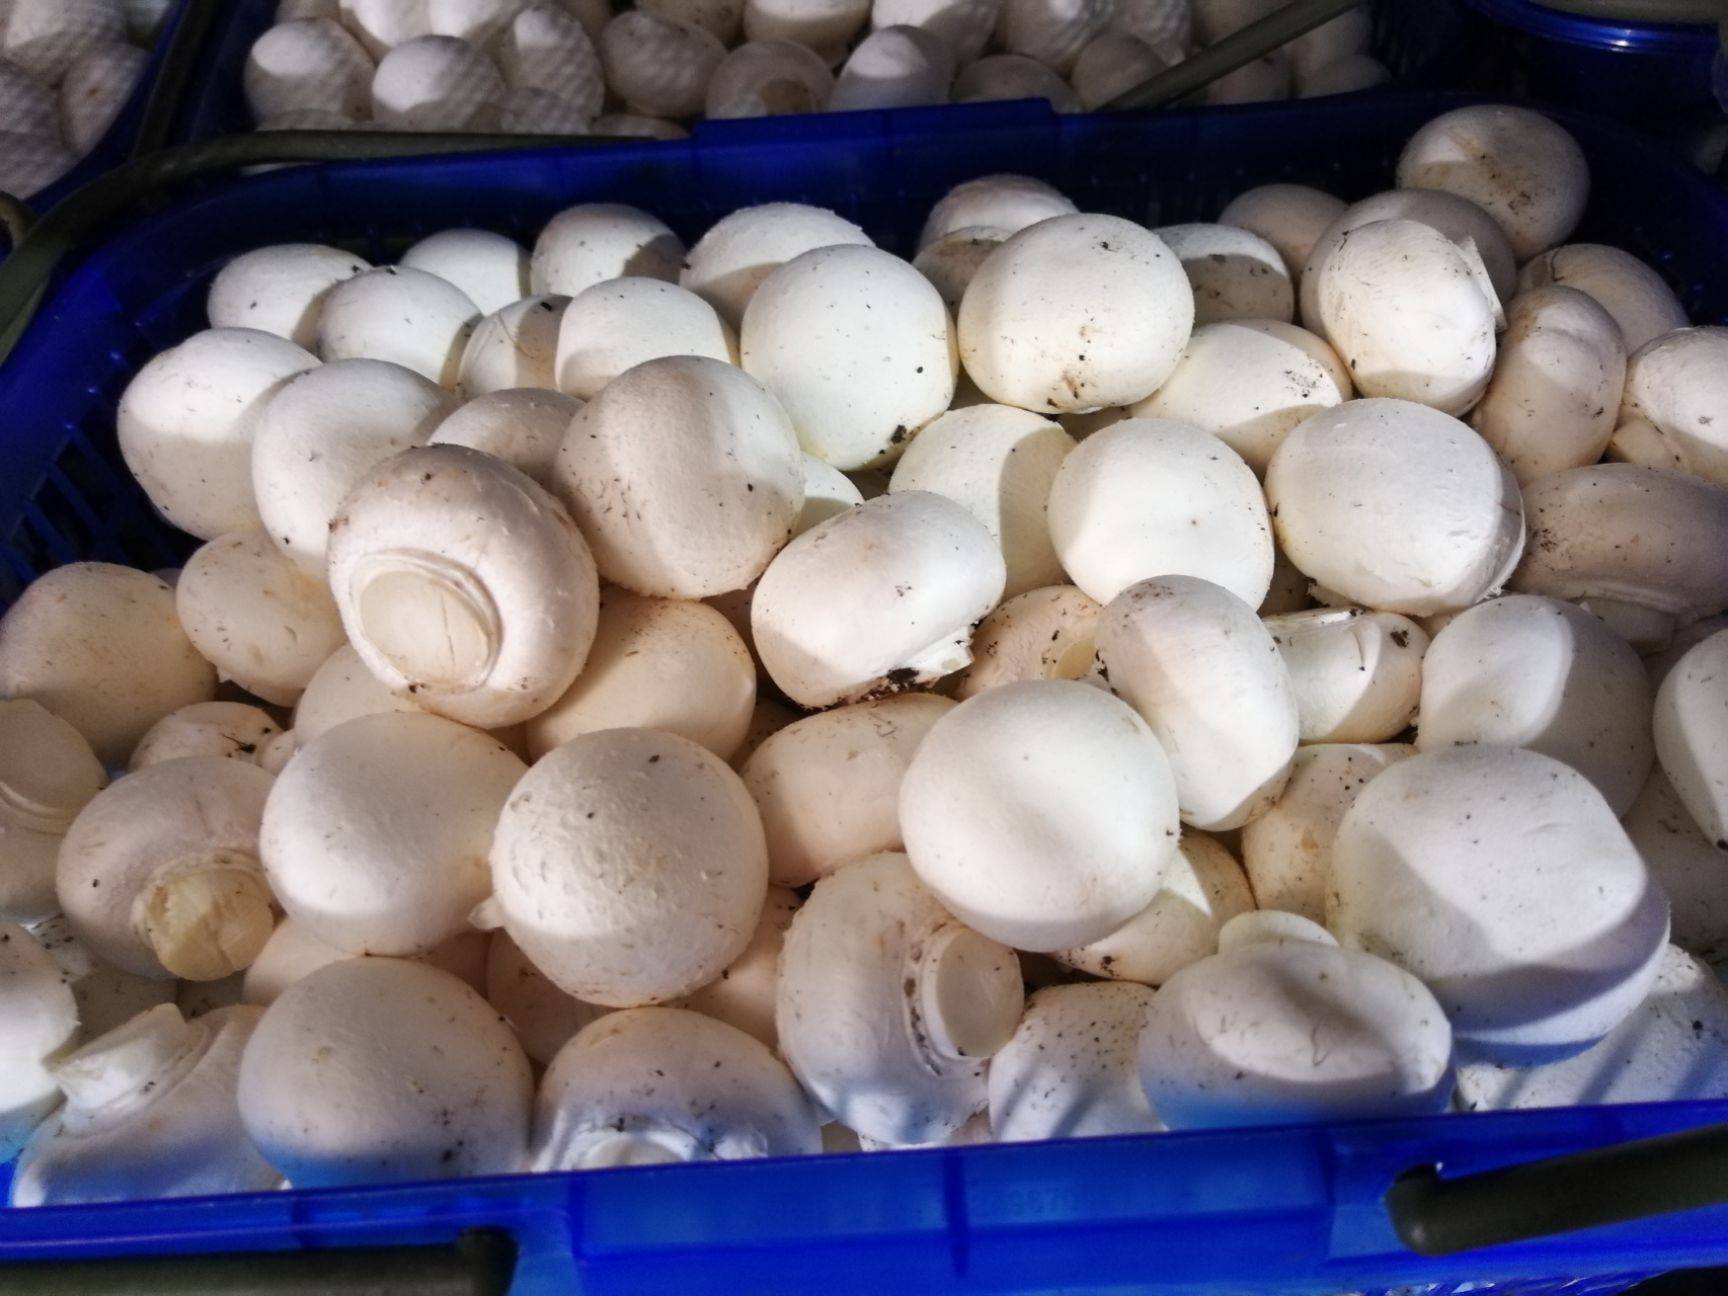 白蘑菇的营养价值